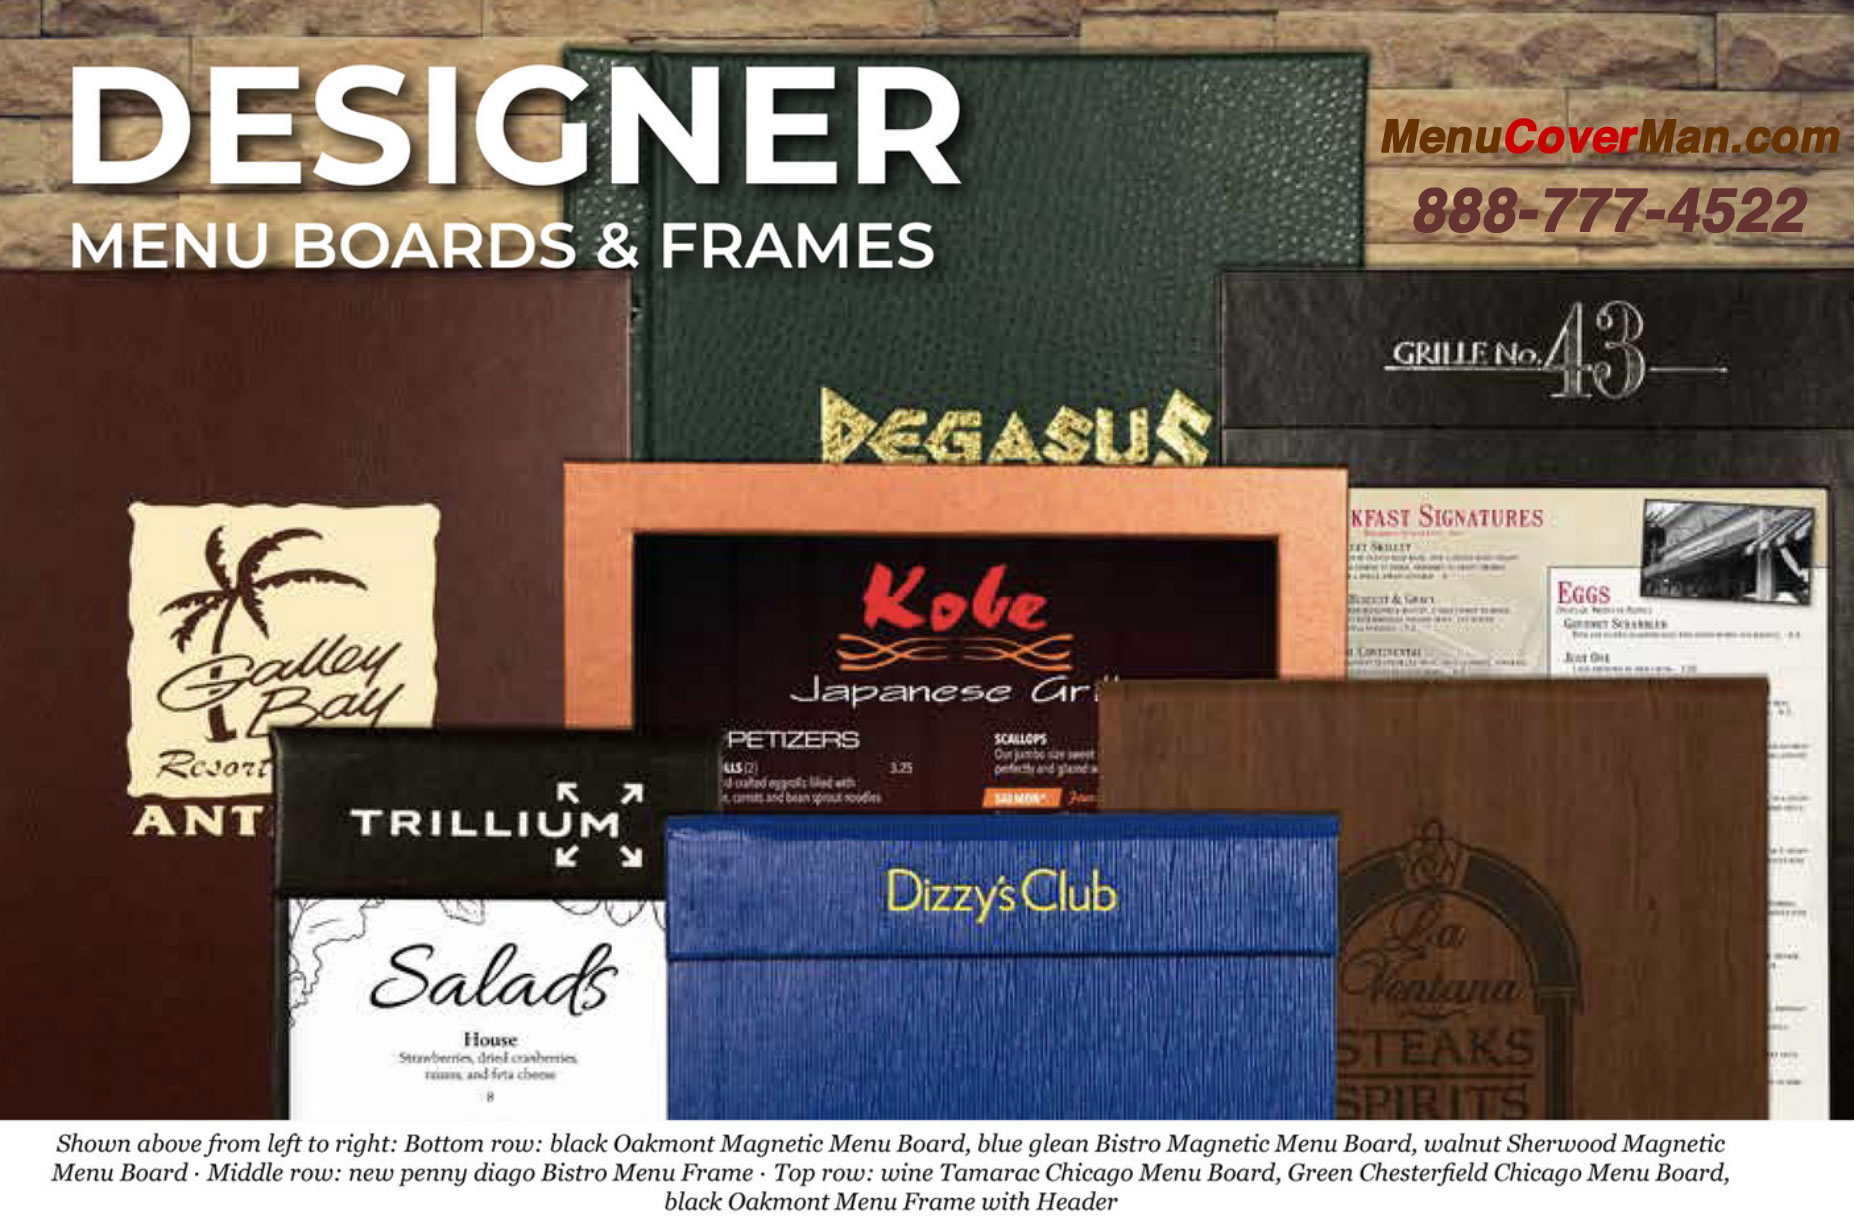 Designer Menu Boards and Frames from MenuCoverMan.com 888-777-4522